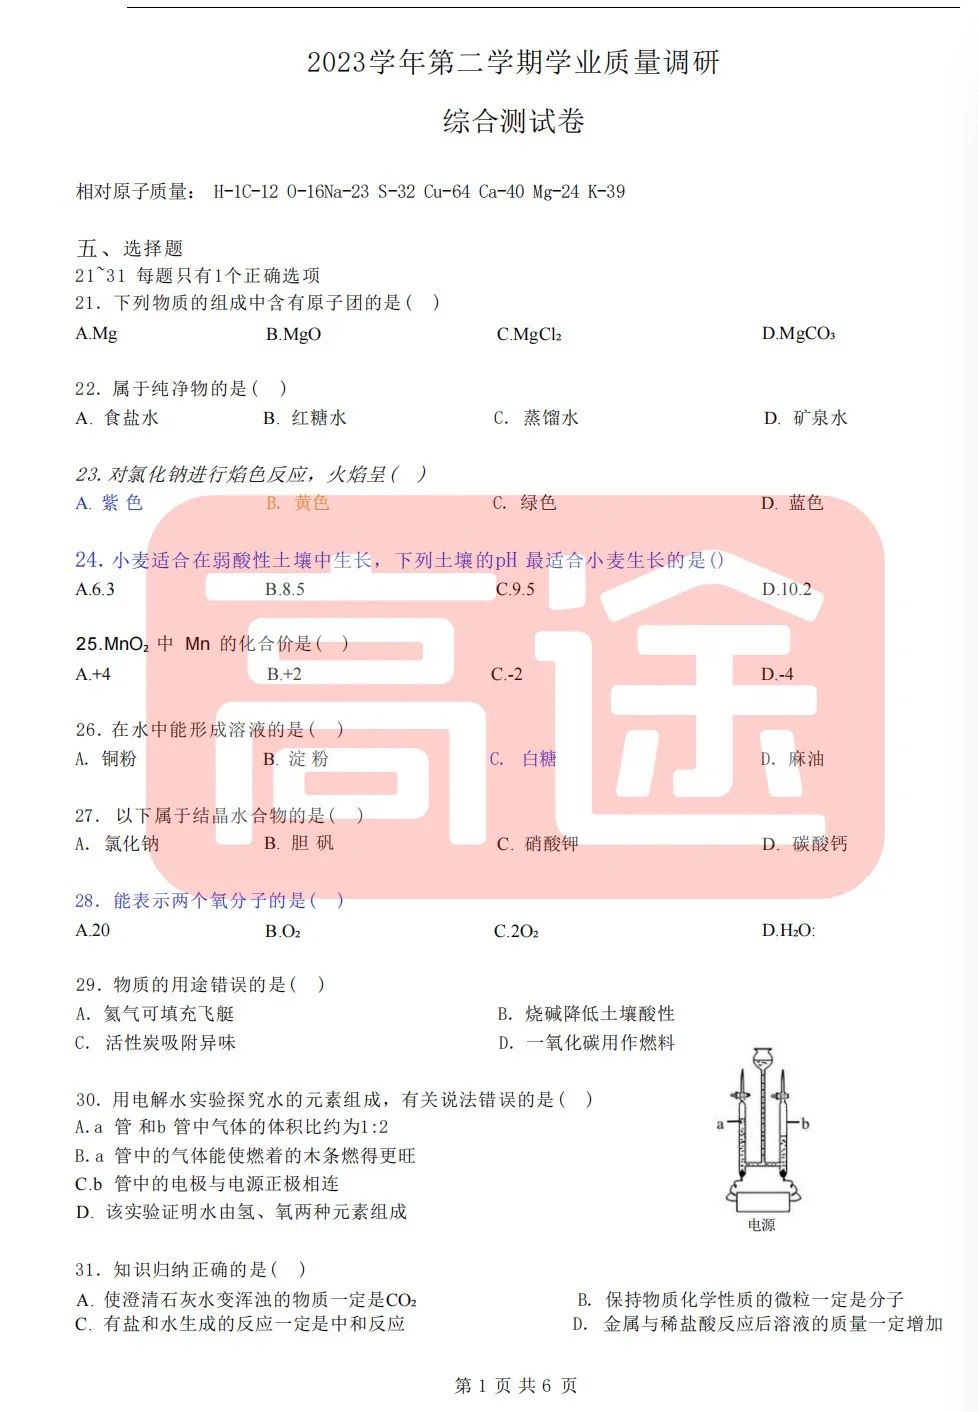 上海16区中考二模真题试卷大合集!定位排名实时更新! 第47张